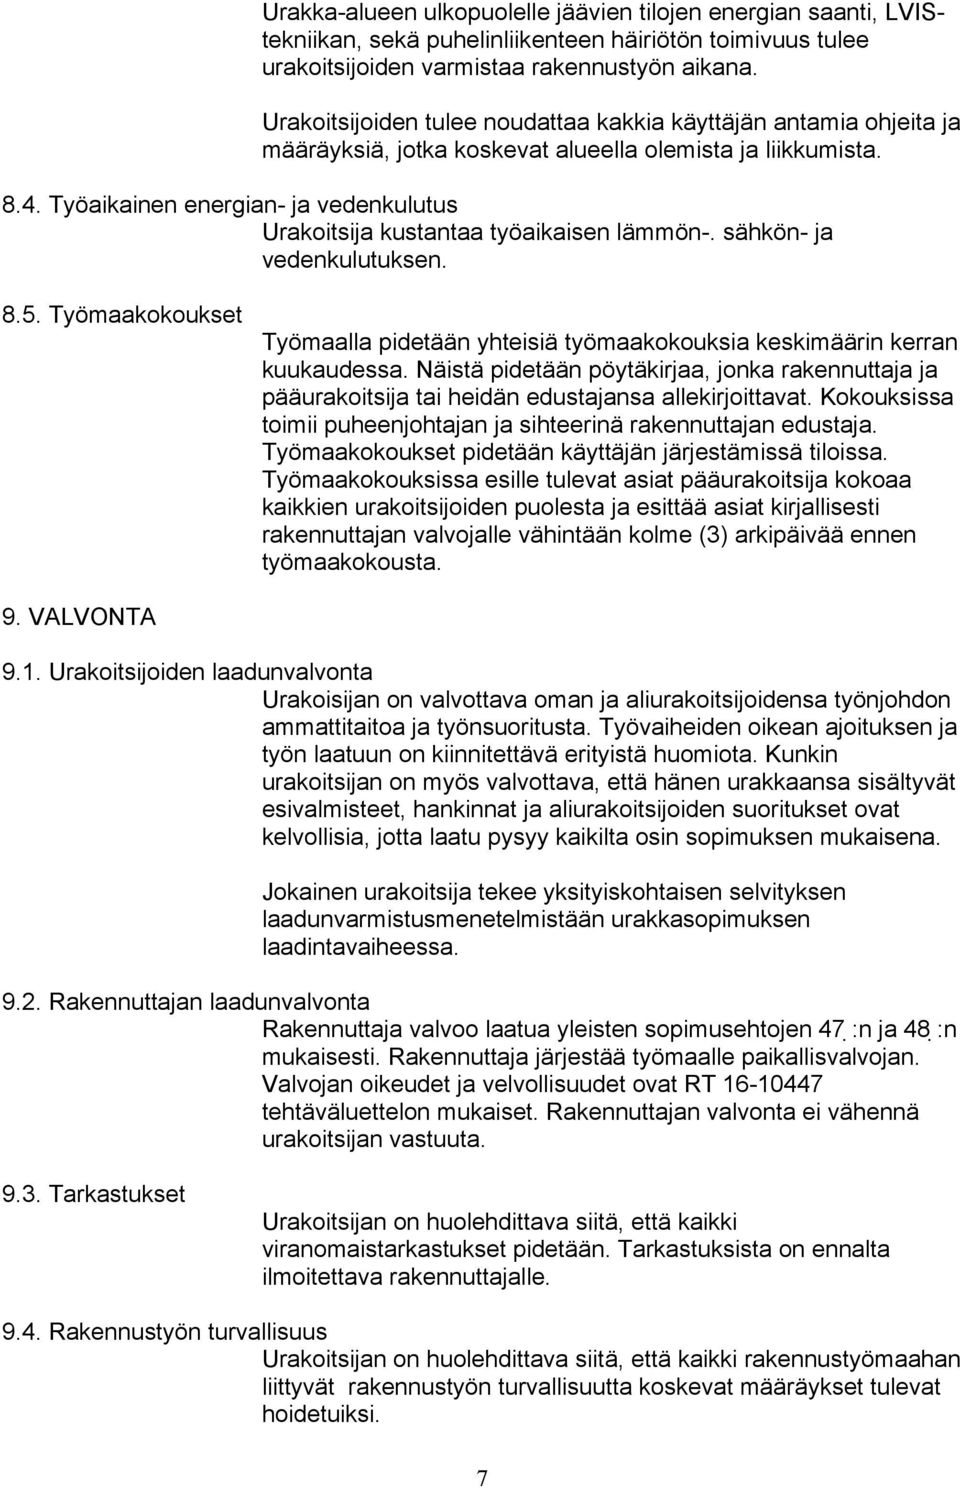 Työaikainen energian- ja vedenkulutus Urakoitsija kustantaa työaikaisen lämmön-. sähkön- ja vedenkulutuksen. 8.5.